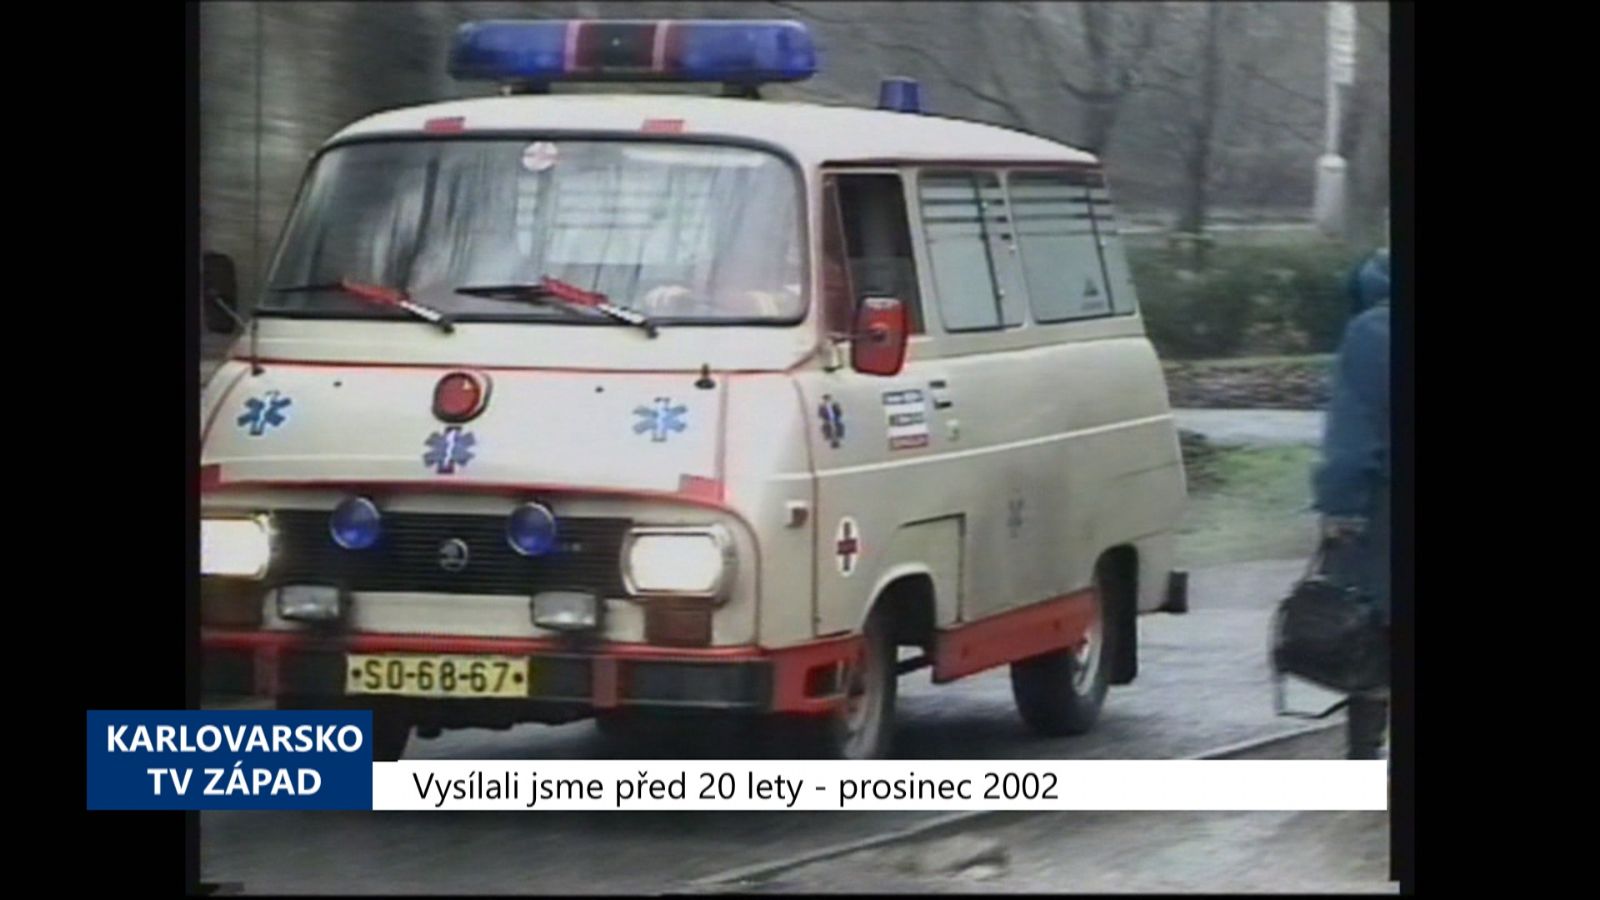 2002 – Sokolov: Vjezd k poliklinice zůstane pro sanitky volný (TV Západ)